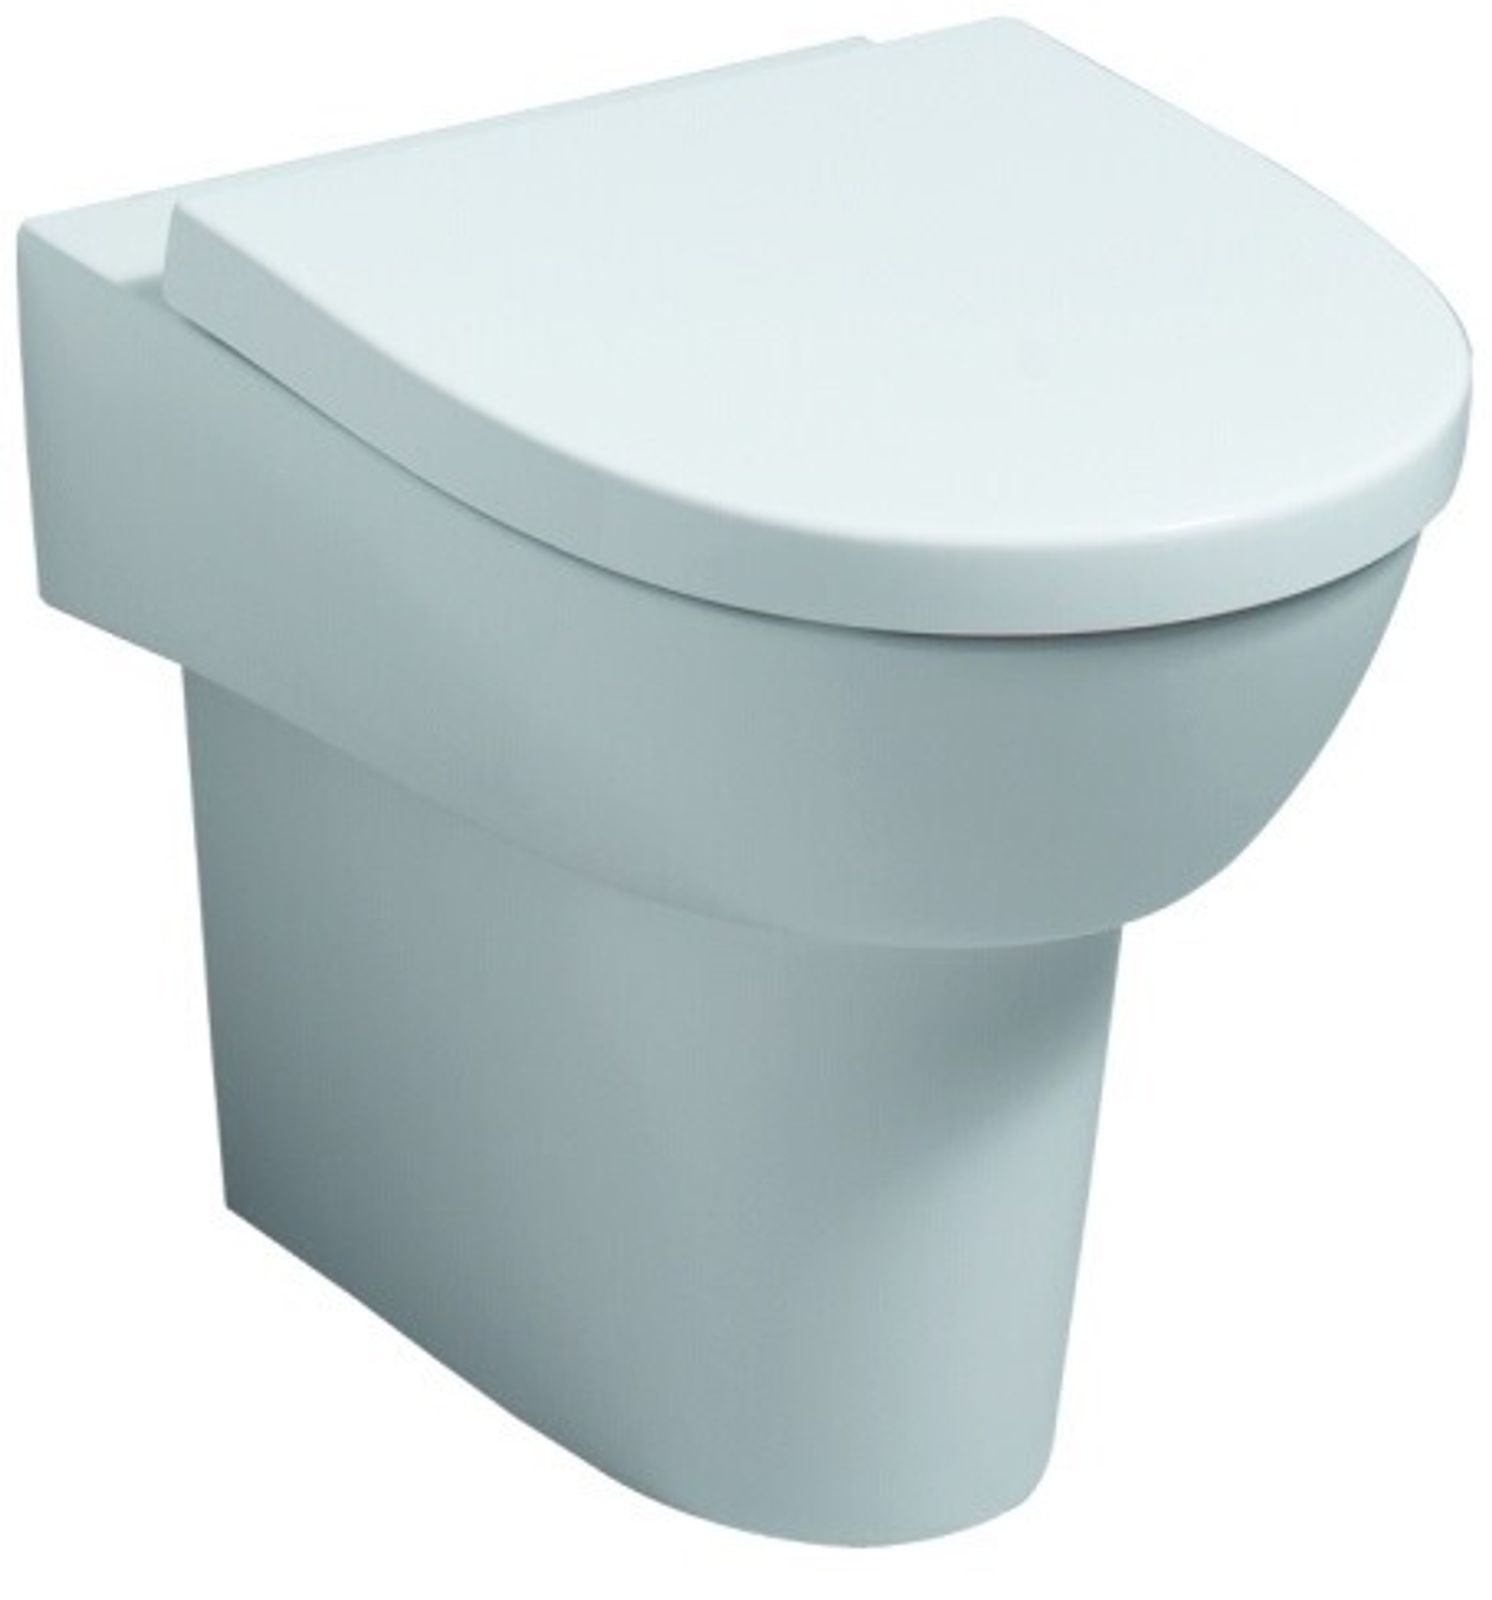 Geberit Flow WC-Sitz, weiß Scharniere verchromt mit Absenkautomatik